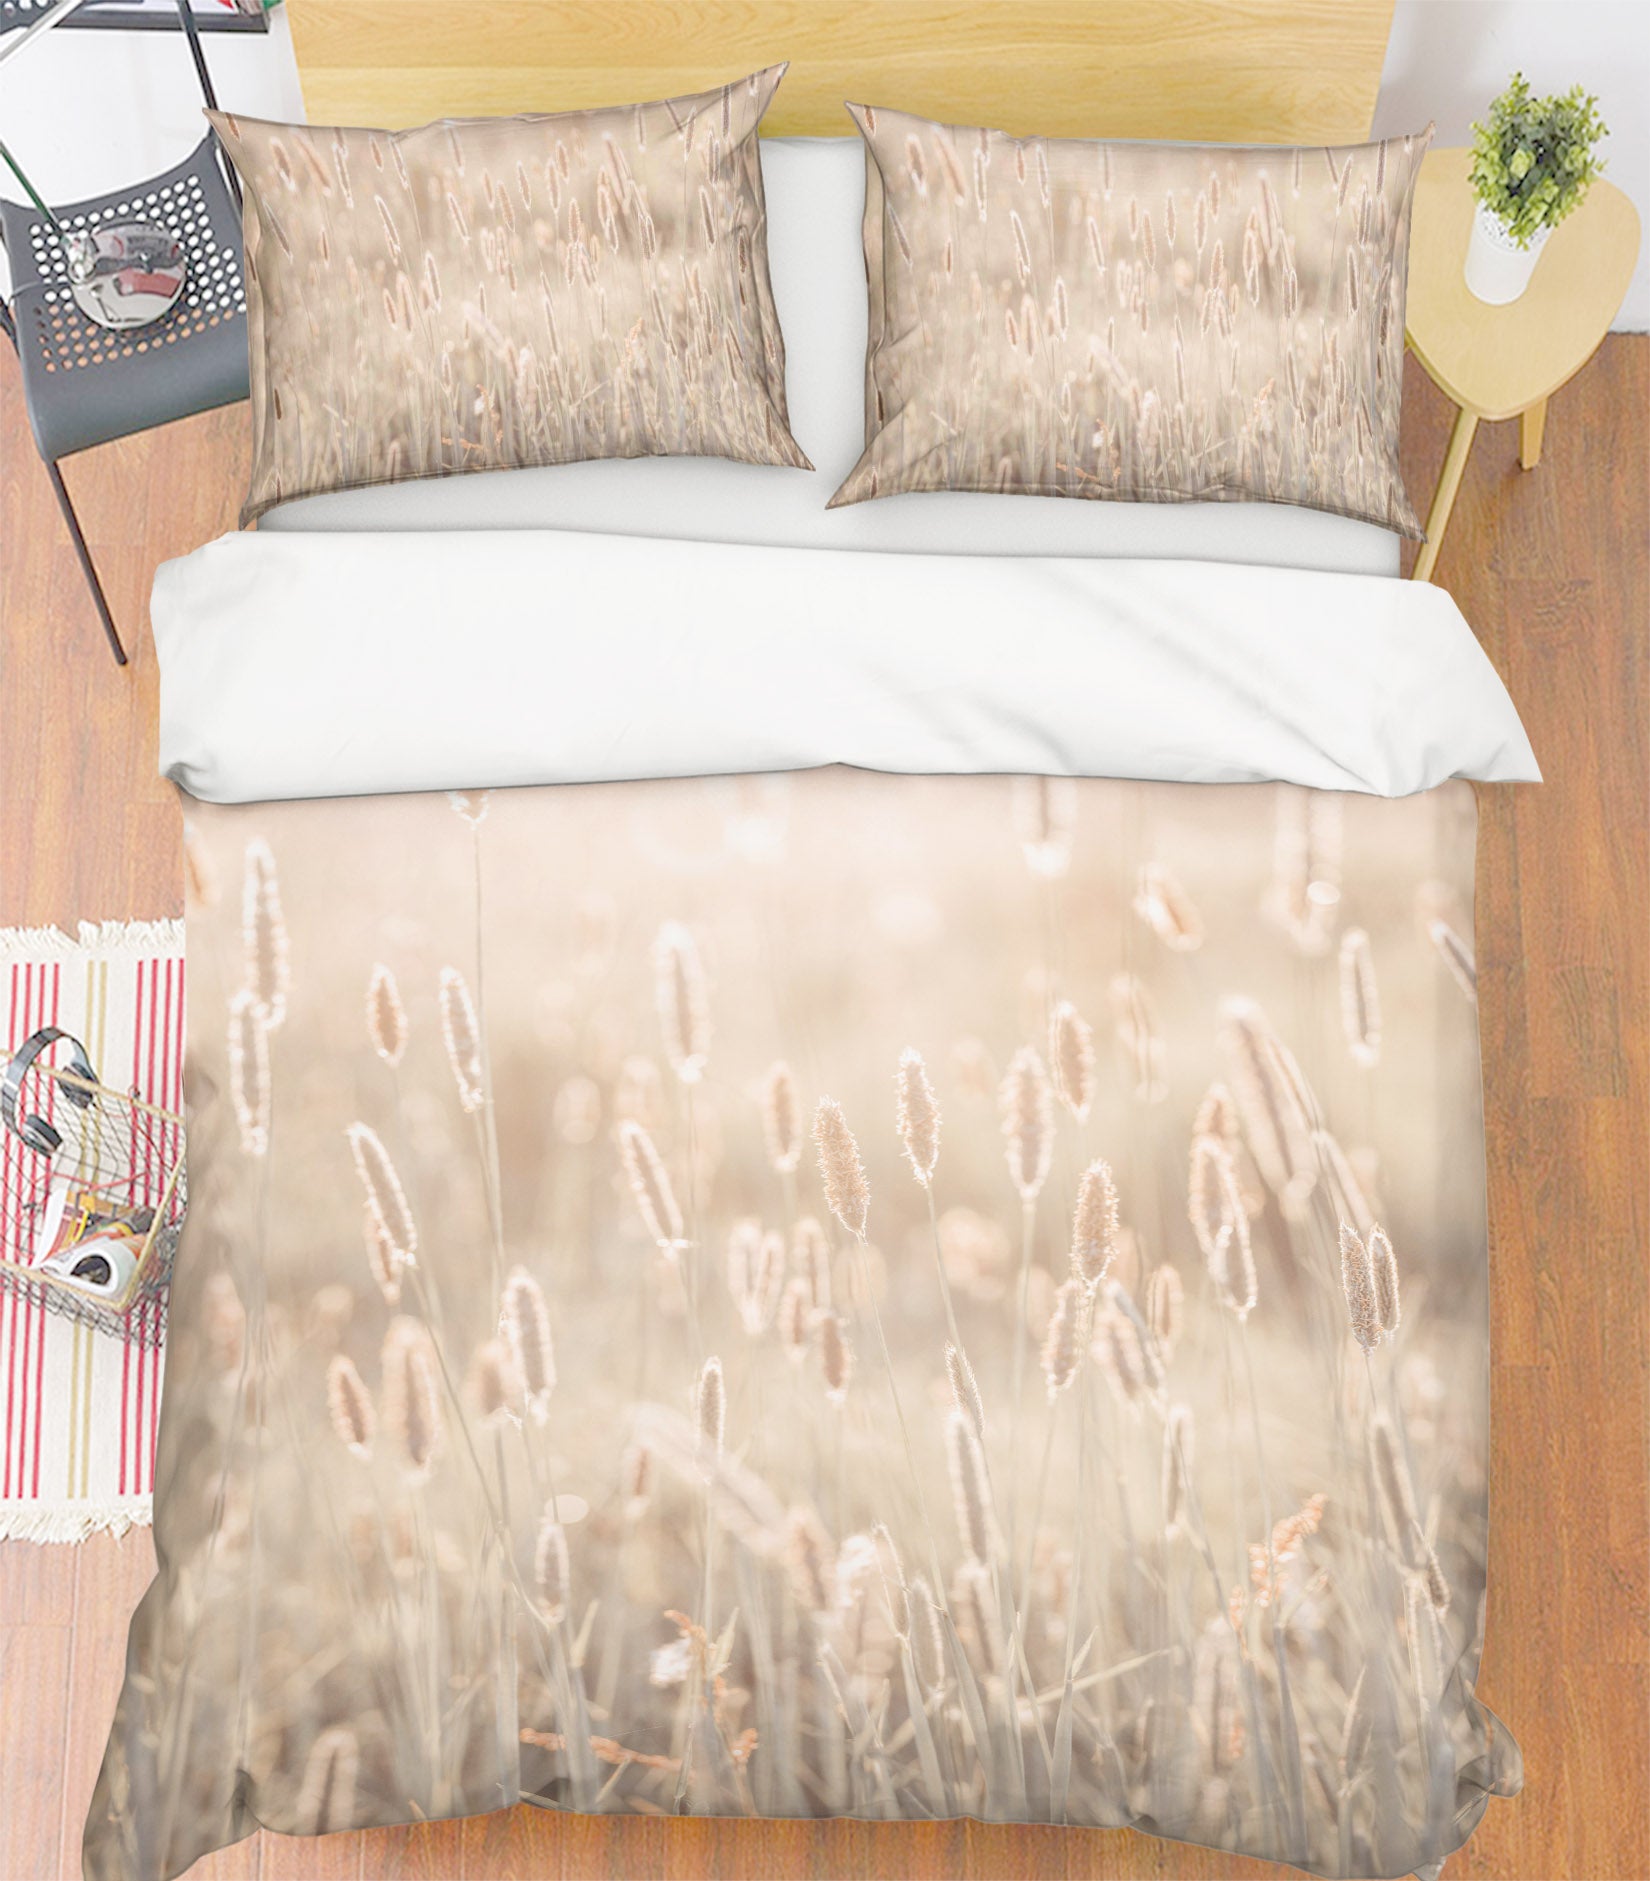 3D Sunlight Grass 7146 Assaf Frank Bedding Bed Pillowcases Quilt Cover Duvet Cover